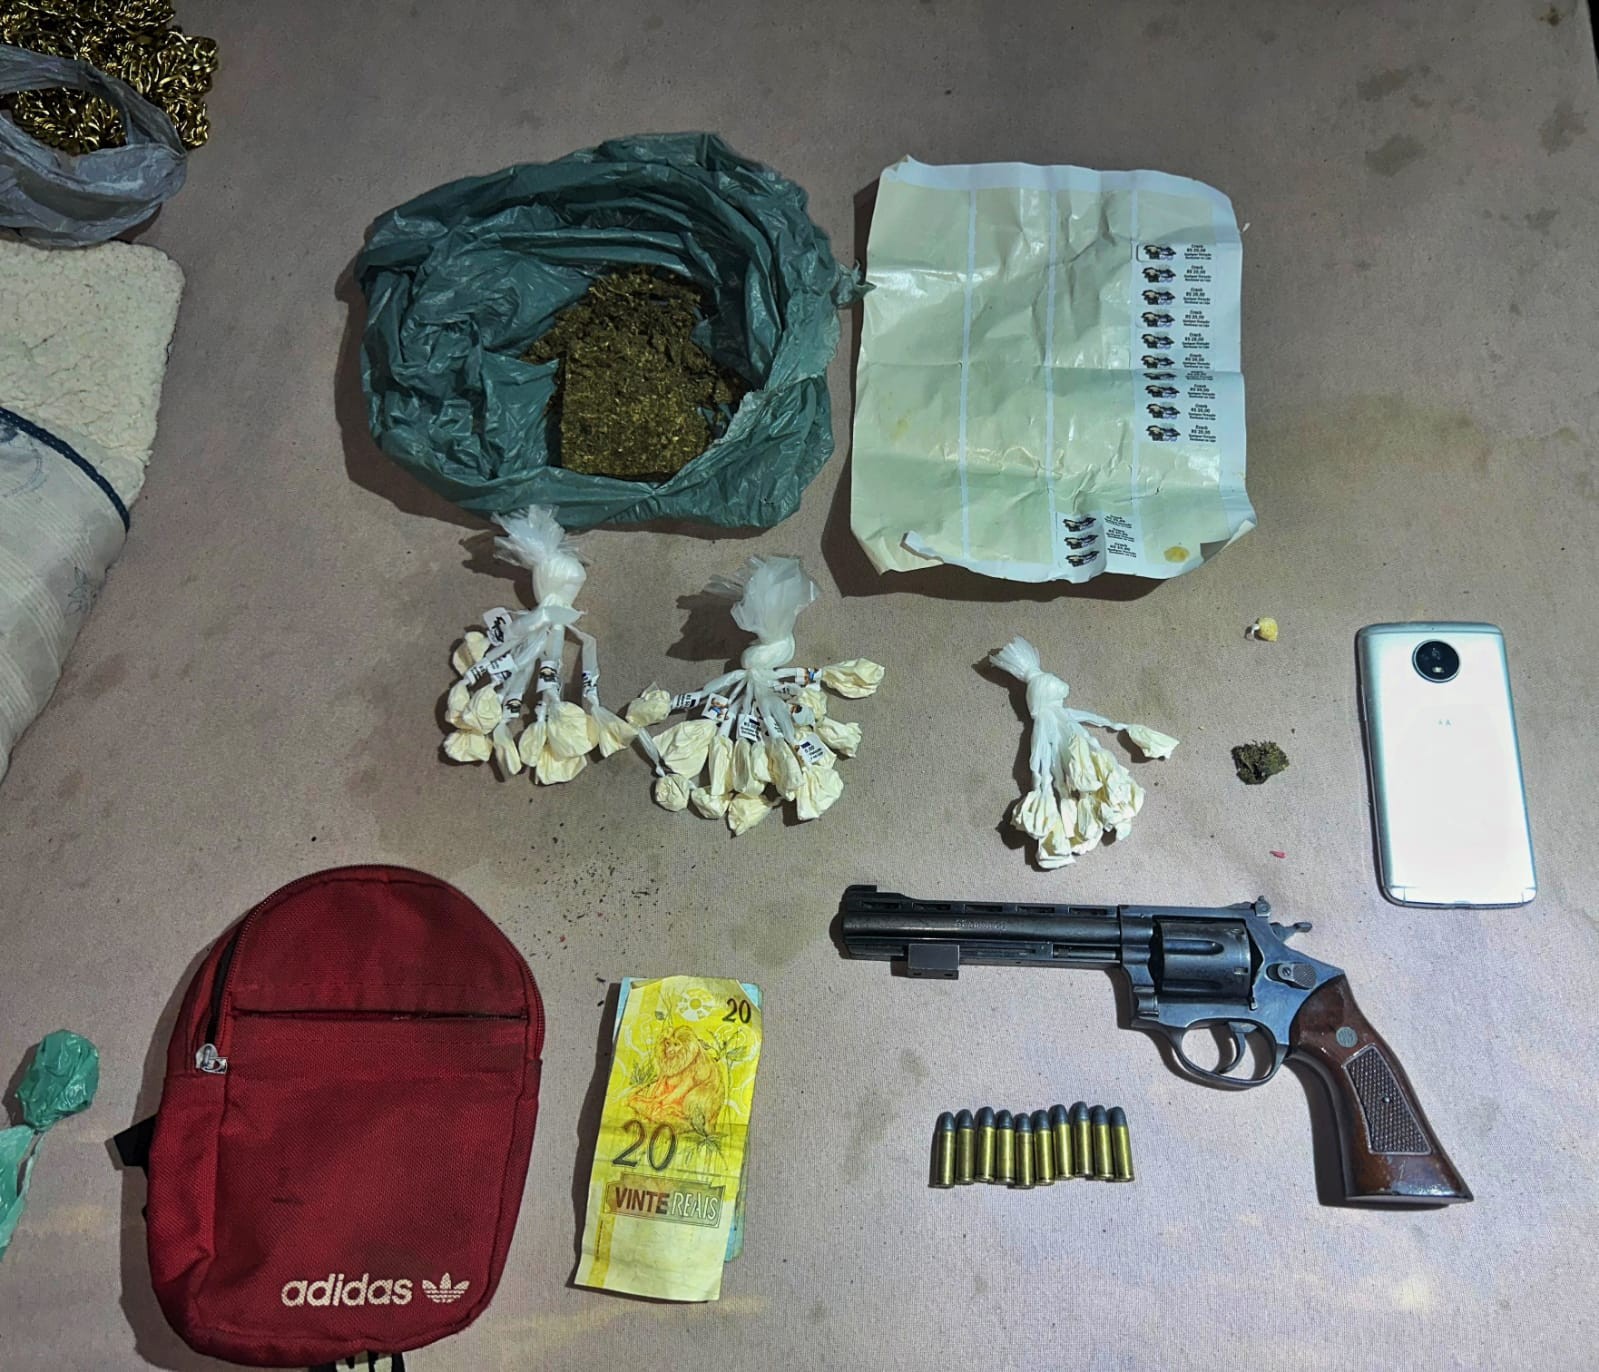 Jovem é preso com arma e drogas em Barra Mansa